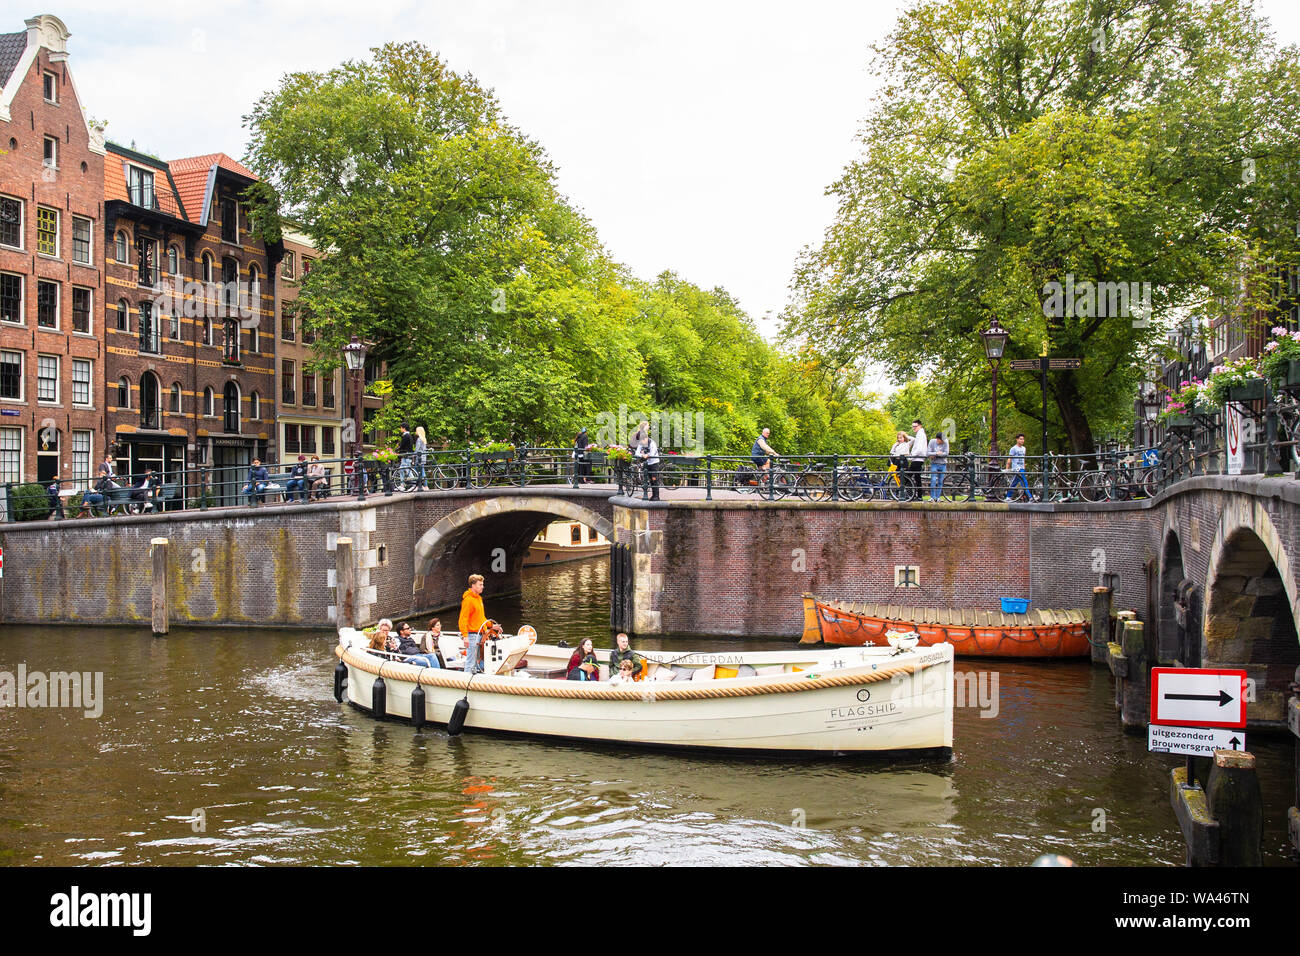 AMSTERDAM, Paesi Bassi - 31 agosto 2018: scene di strada da Amsterdam in un giorno di estate con persone reali, in barca sul canale e architettura. Foto Stock